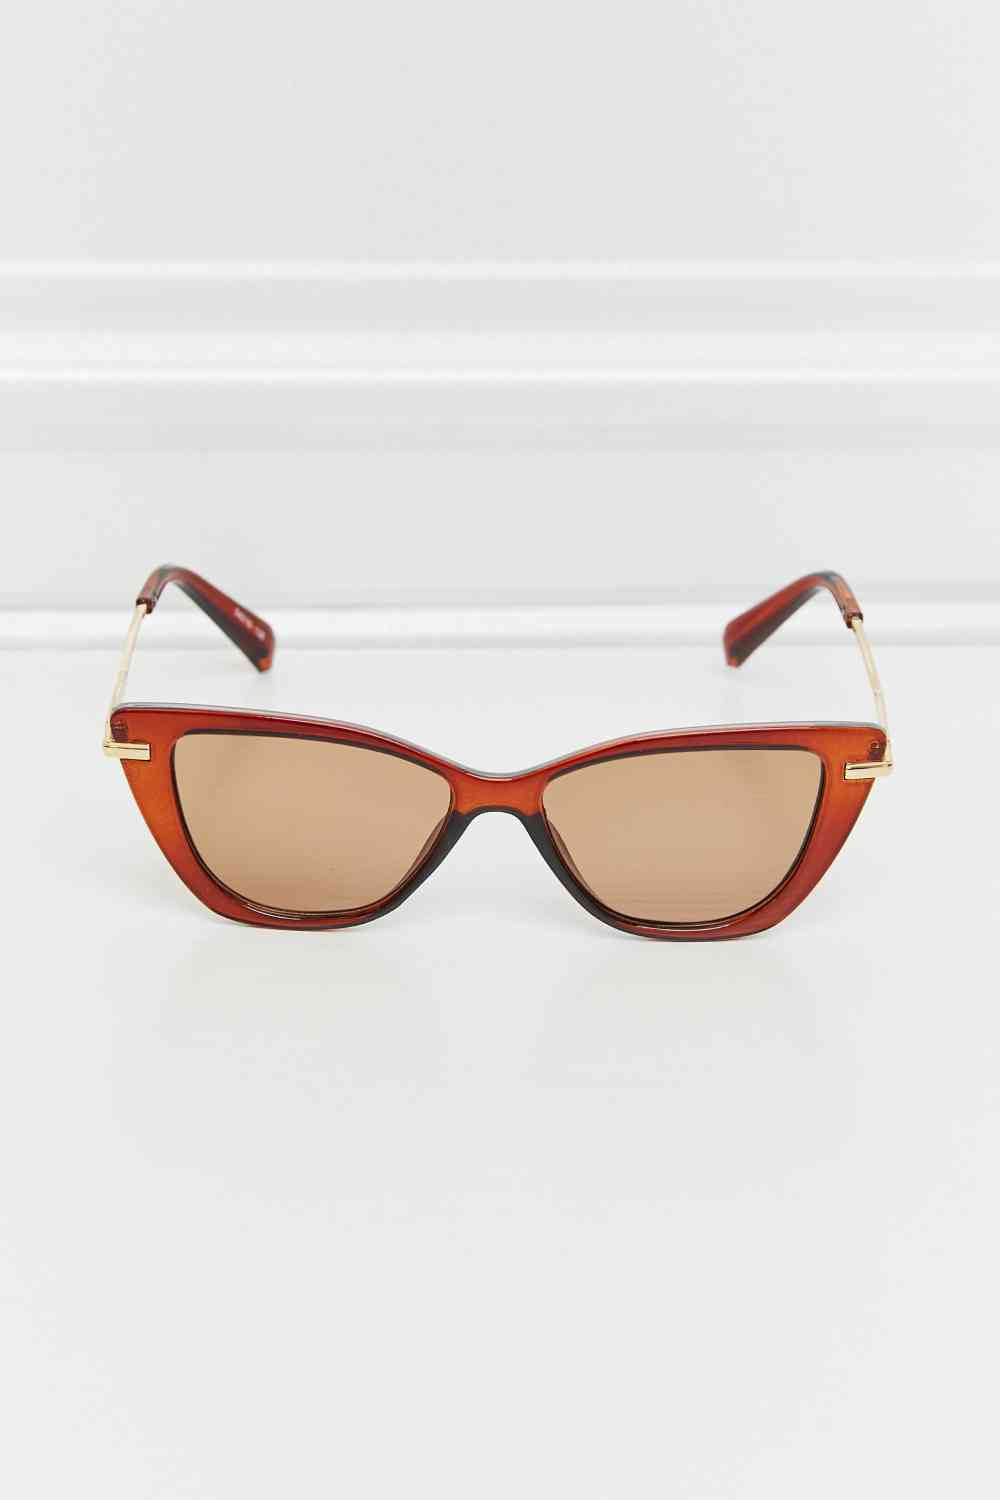 TEEK - Success Rim Sunglasses EYEGLASSES TEEK Trend   